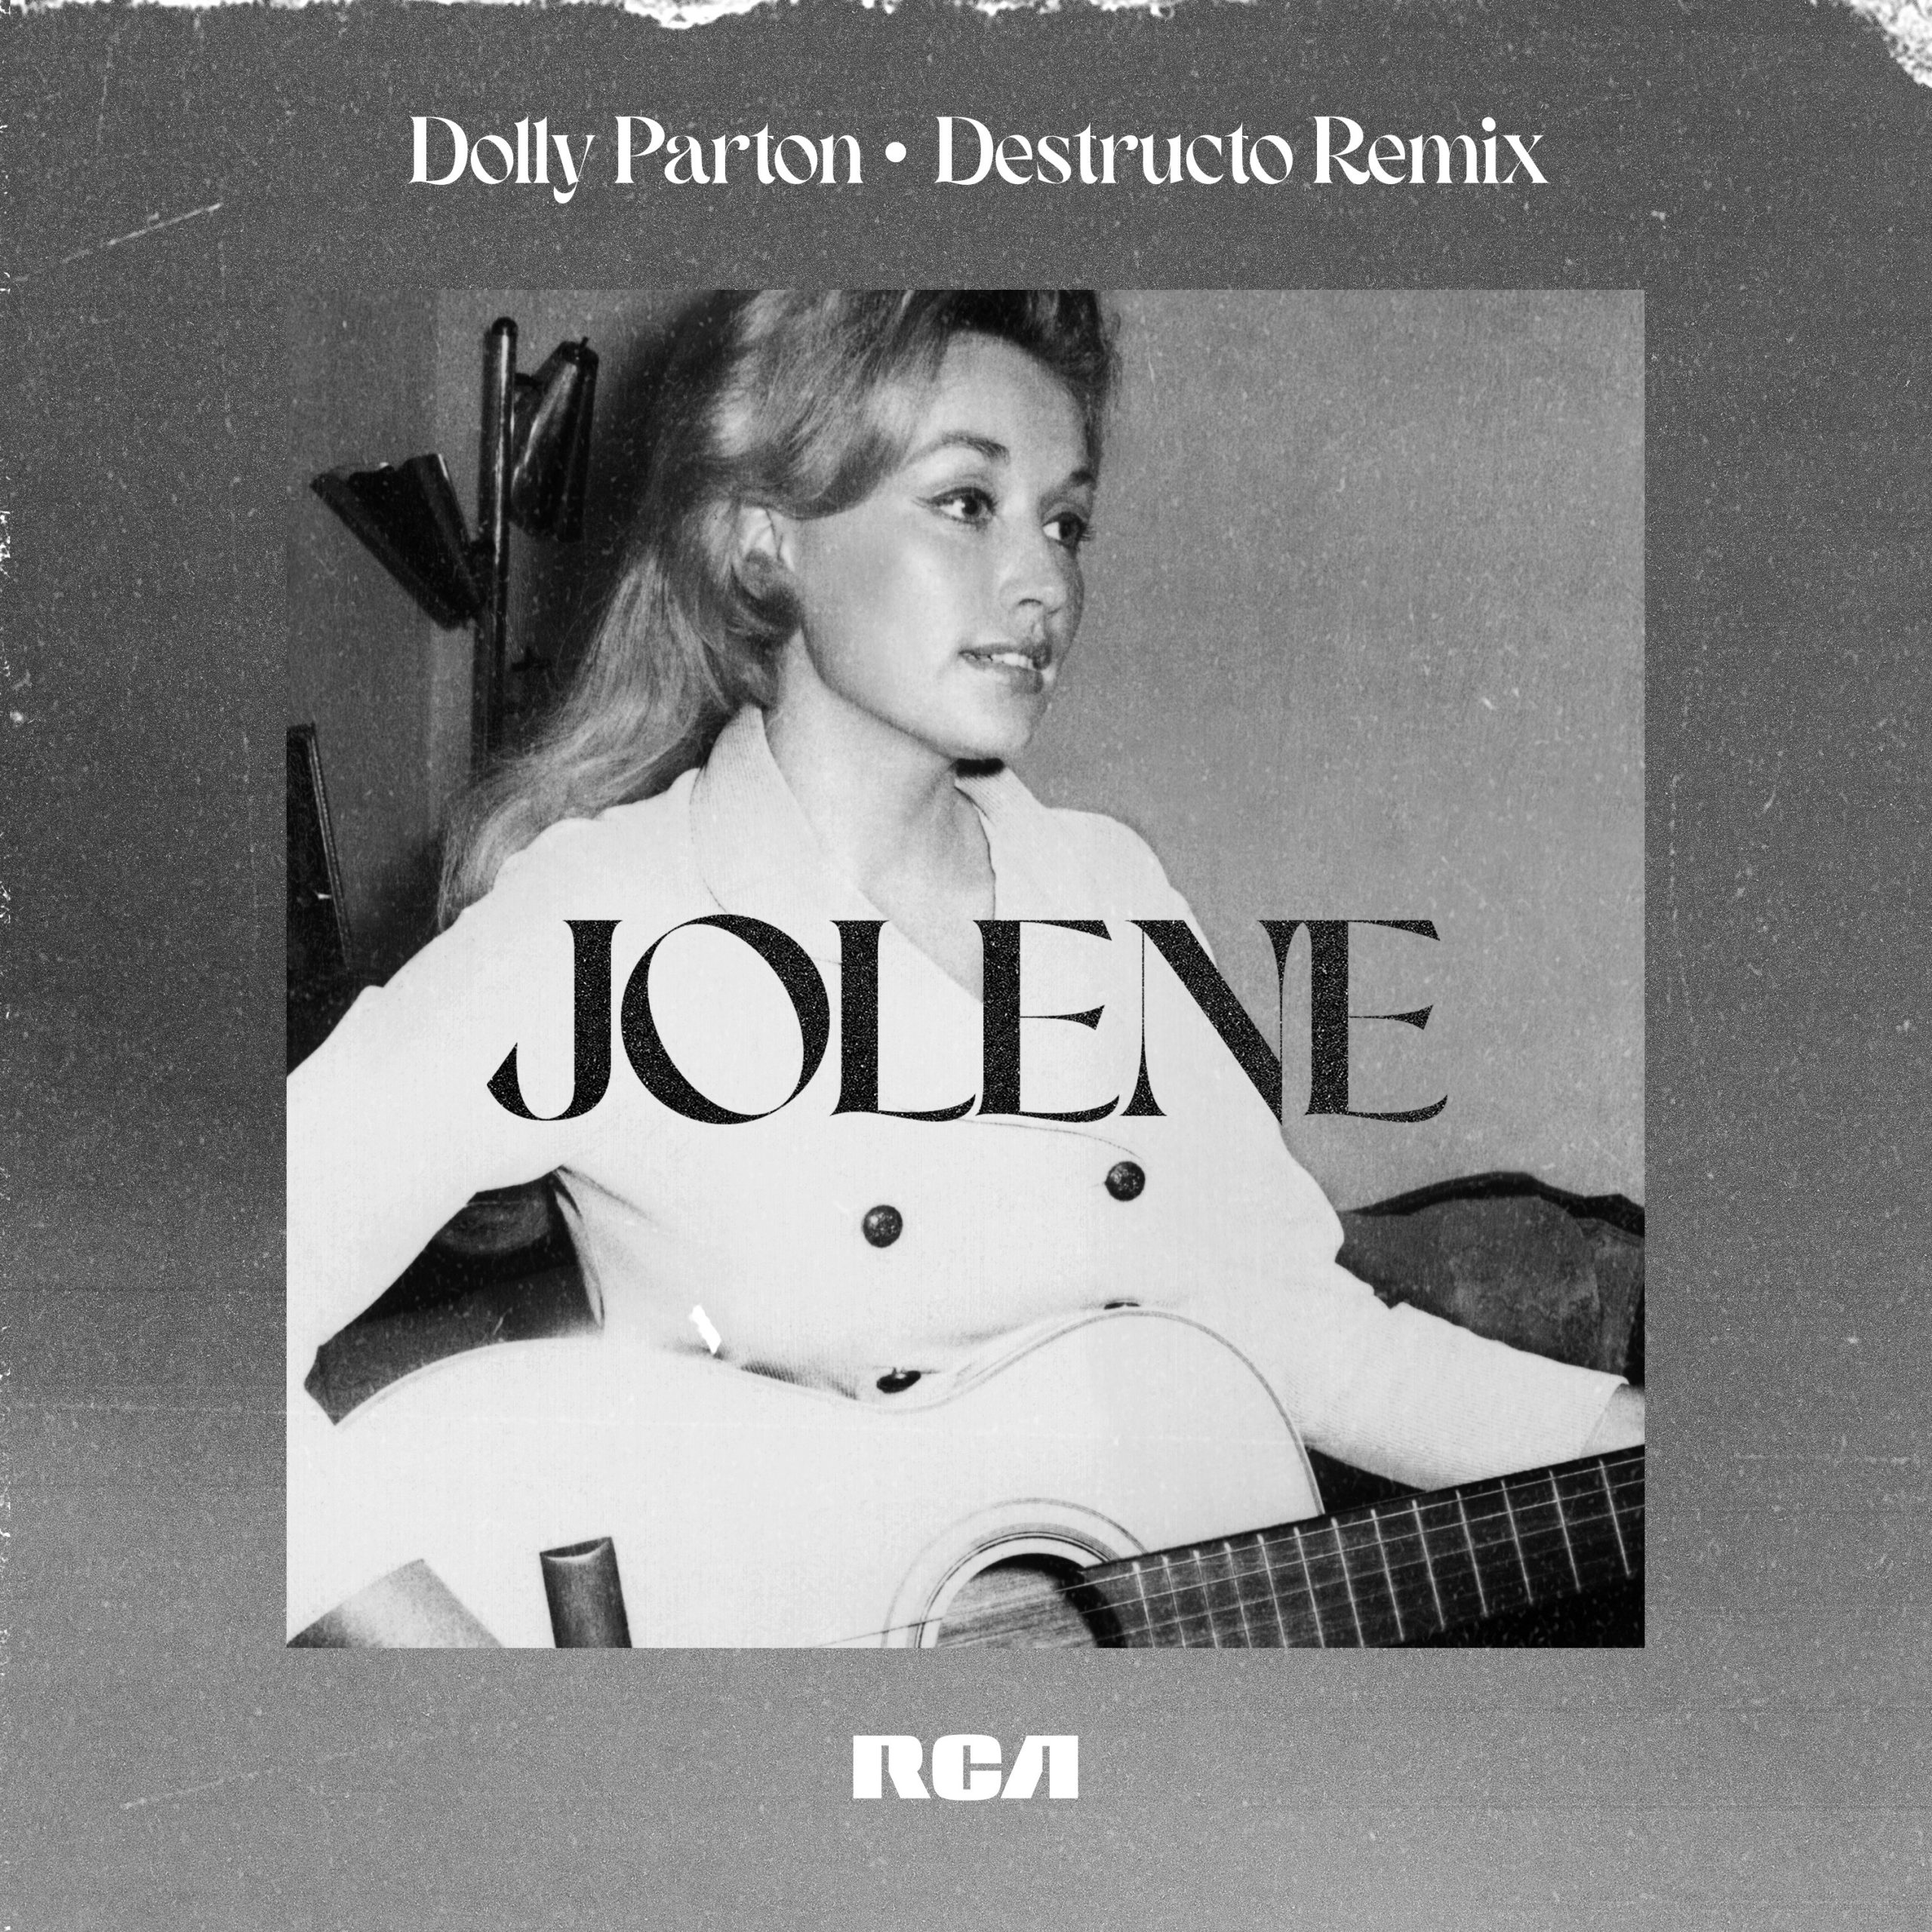 Dolly Parton “Jolene” Destructo Remix